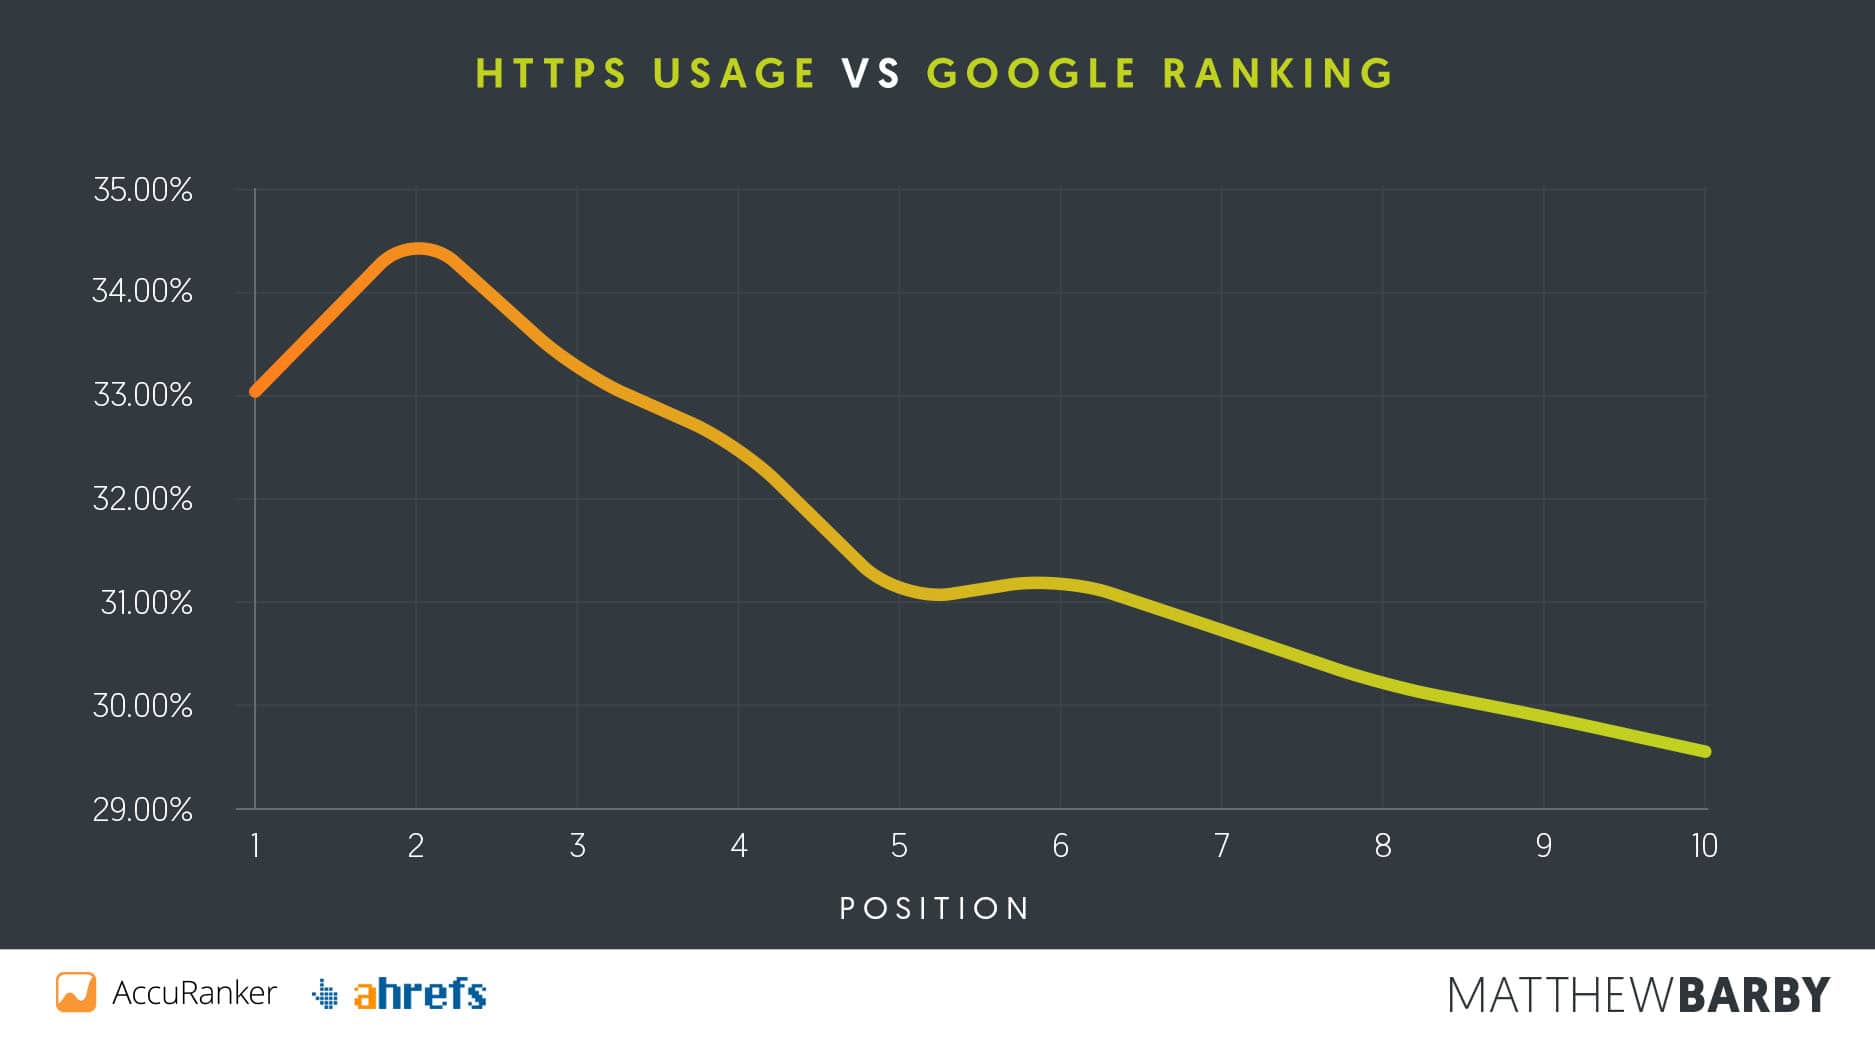 L'uso di HTTPS confrontato con il ranking di Google